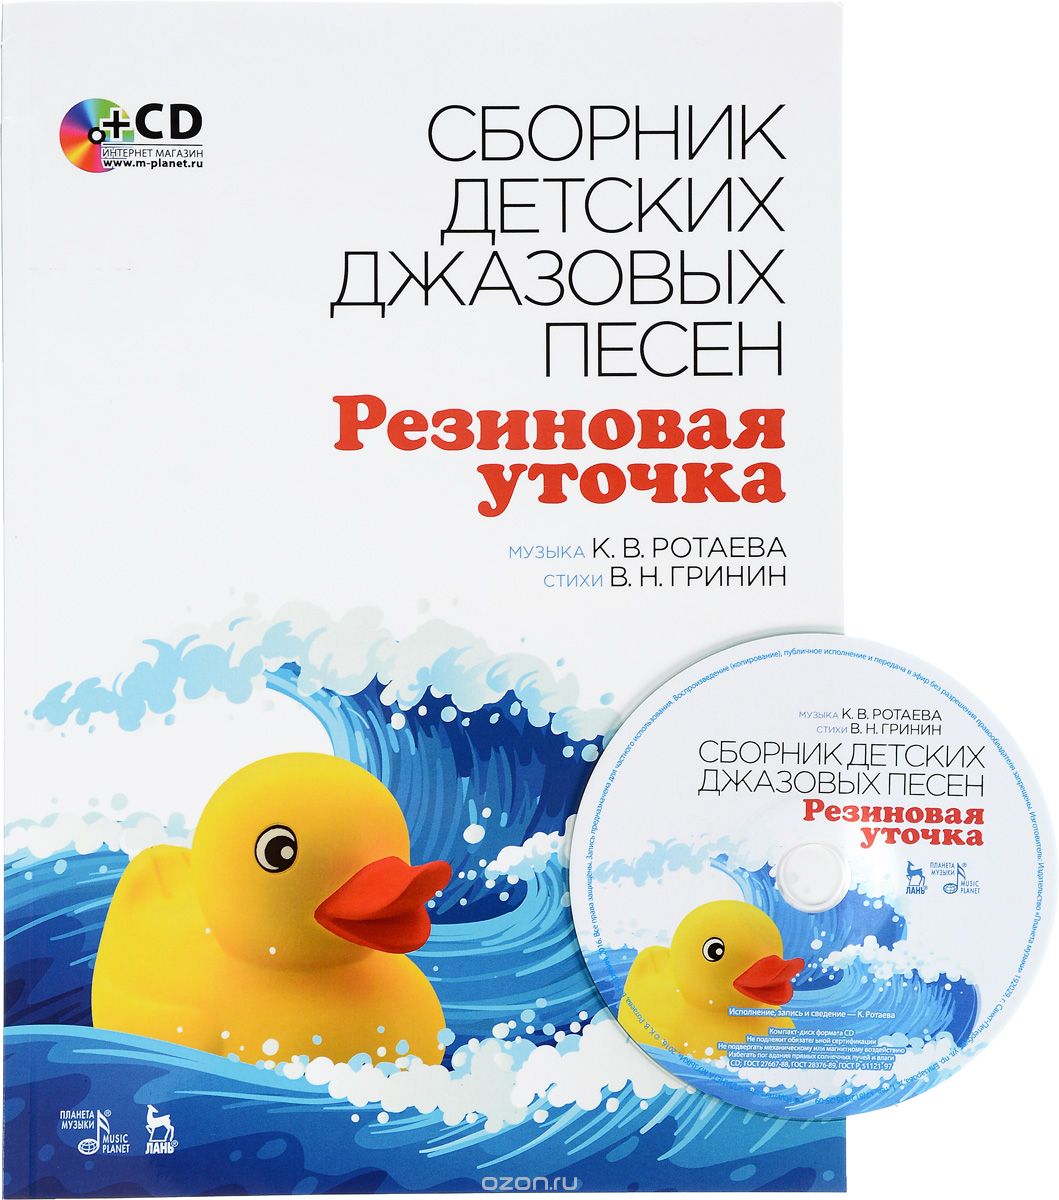 Скачать книгу "Collection of Children’s Jazz Songs "Rubber Duck": Textbook / Сборник детских джазовых песен "Резиновая уточка" (+ CD)"